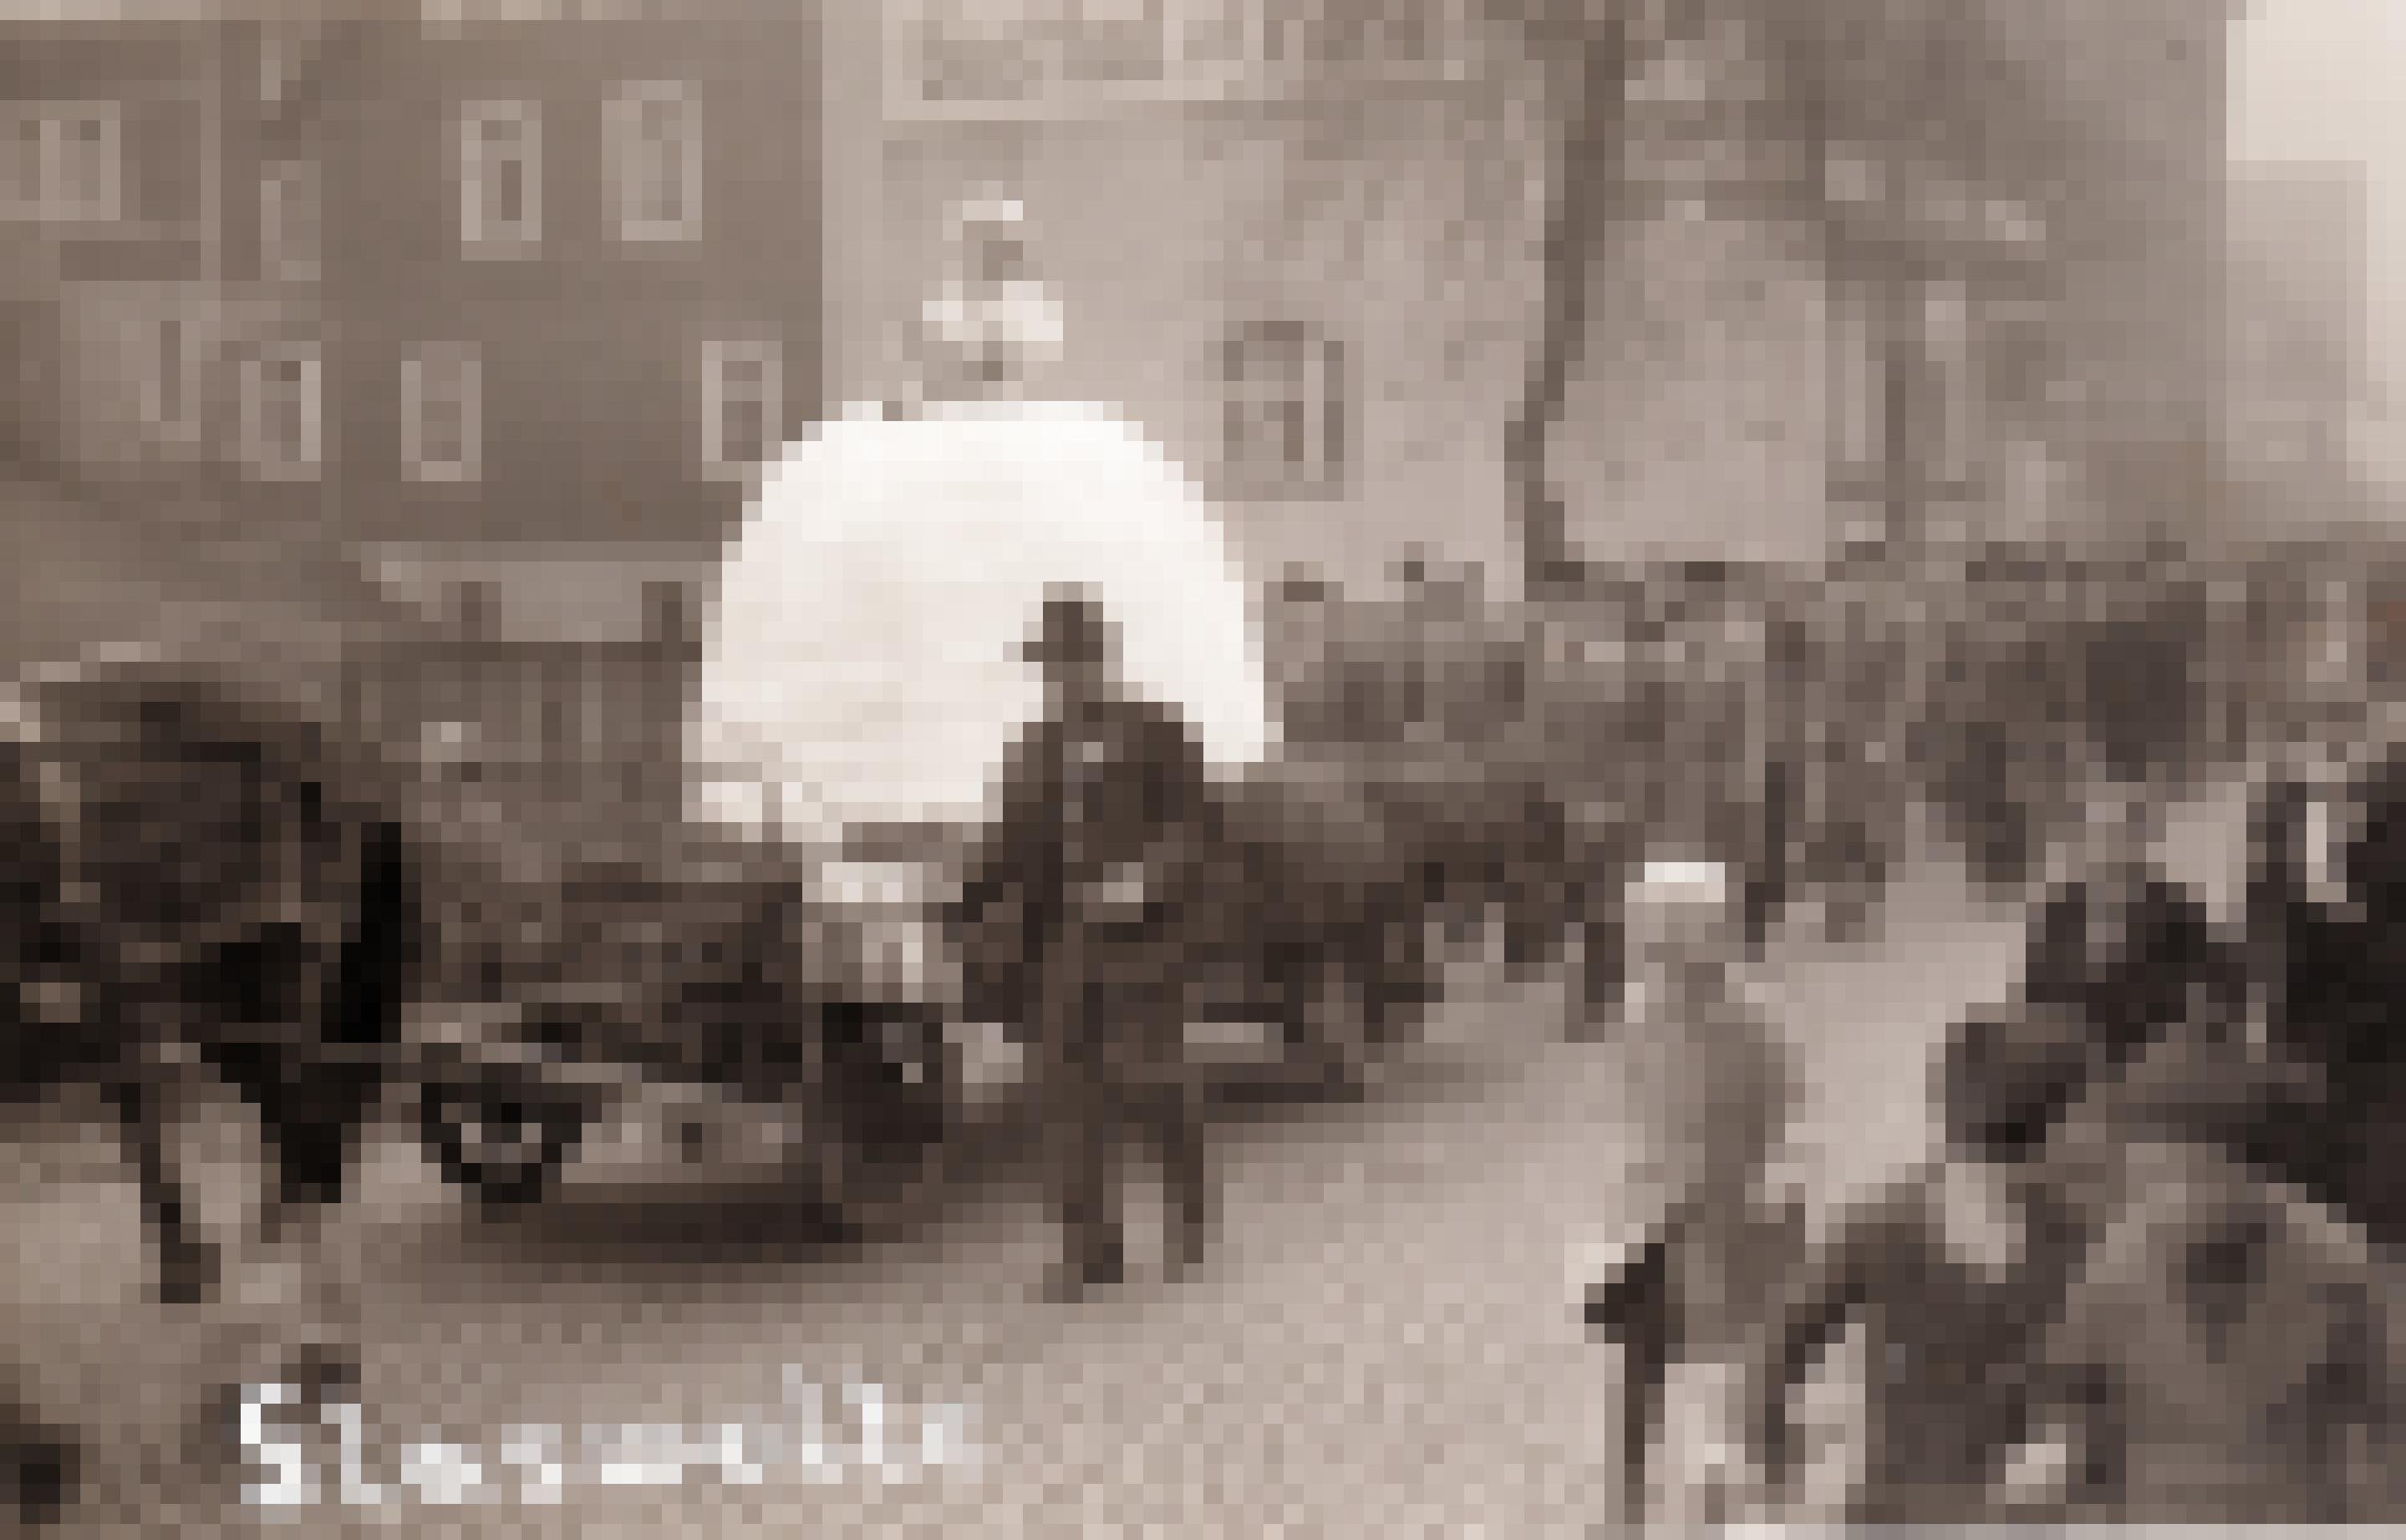 Ein altes Foto einer Parade. Auf einem Wagen der von Pferden gezogen wird ist eine Frau mit einem leuchtend weißen Kleid. Dahinter läuft eine Gruppe Männer in Anzügen.